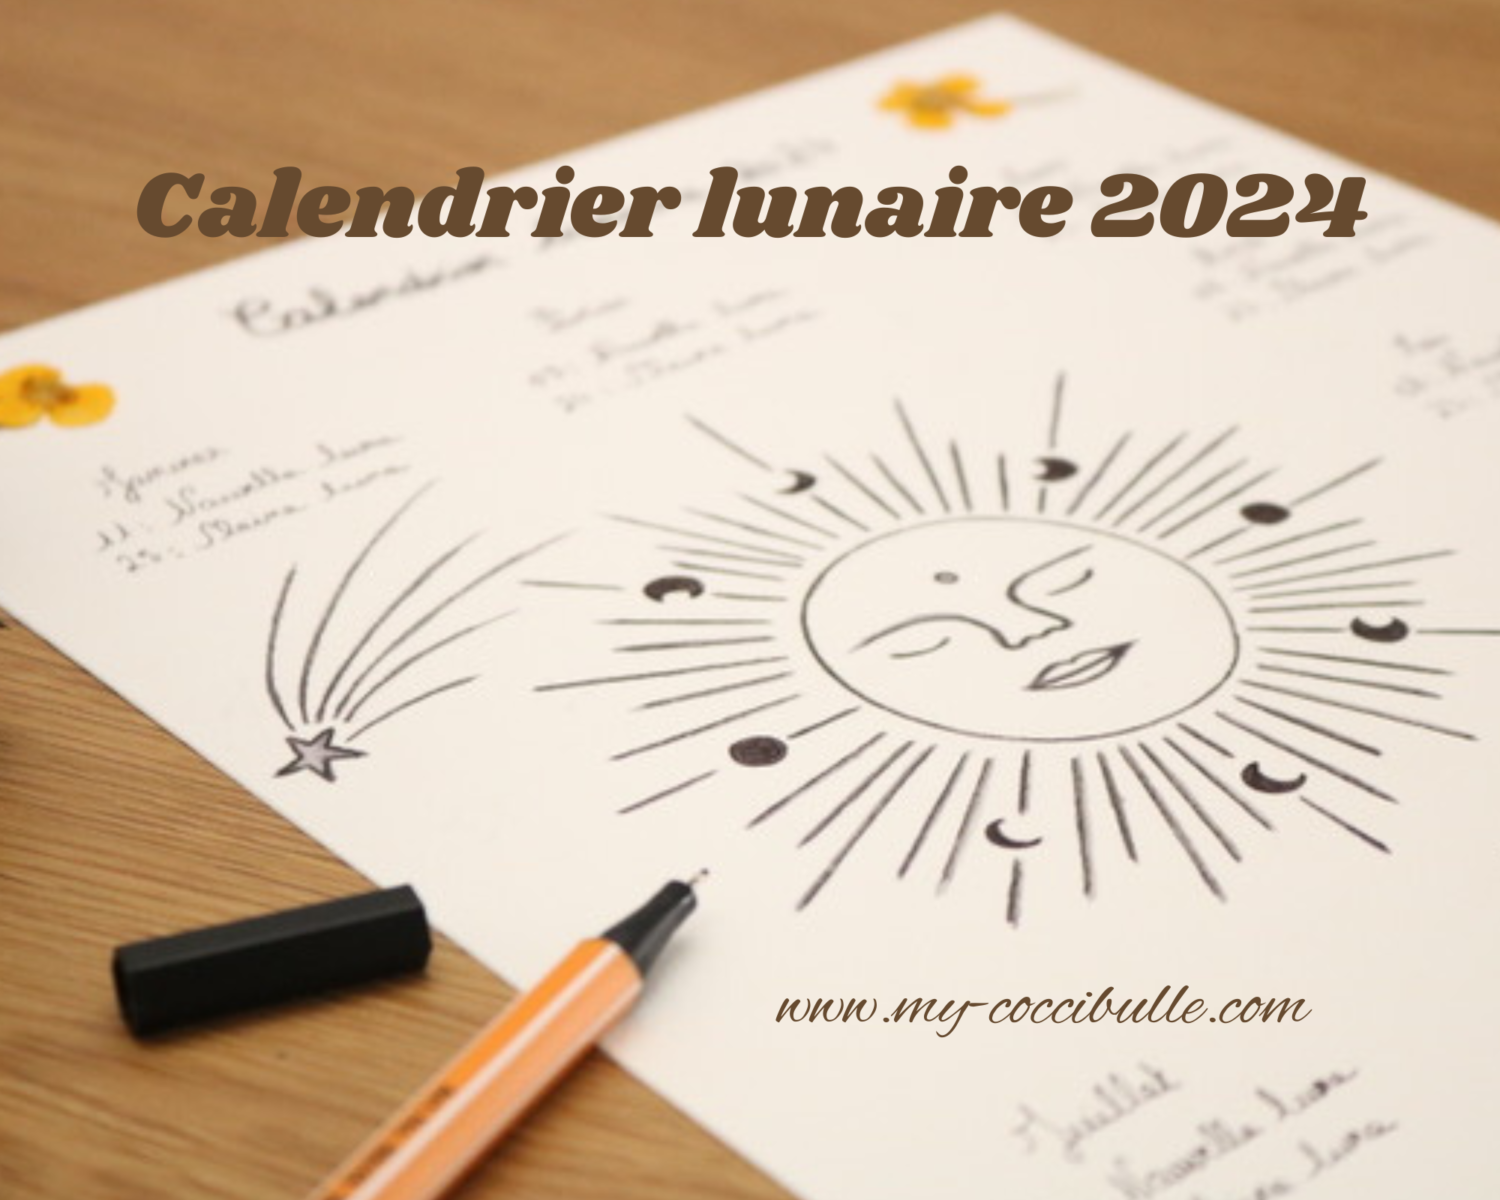 Calendrier lunaire 2024 –